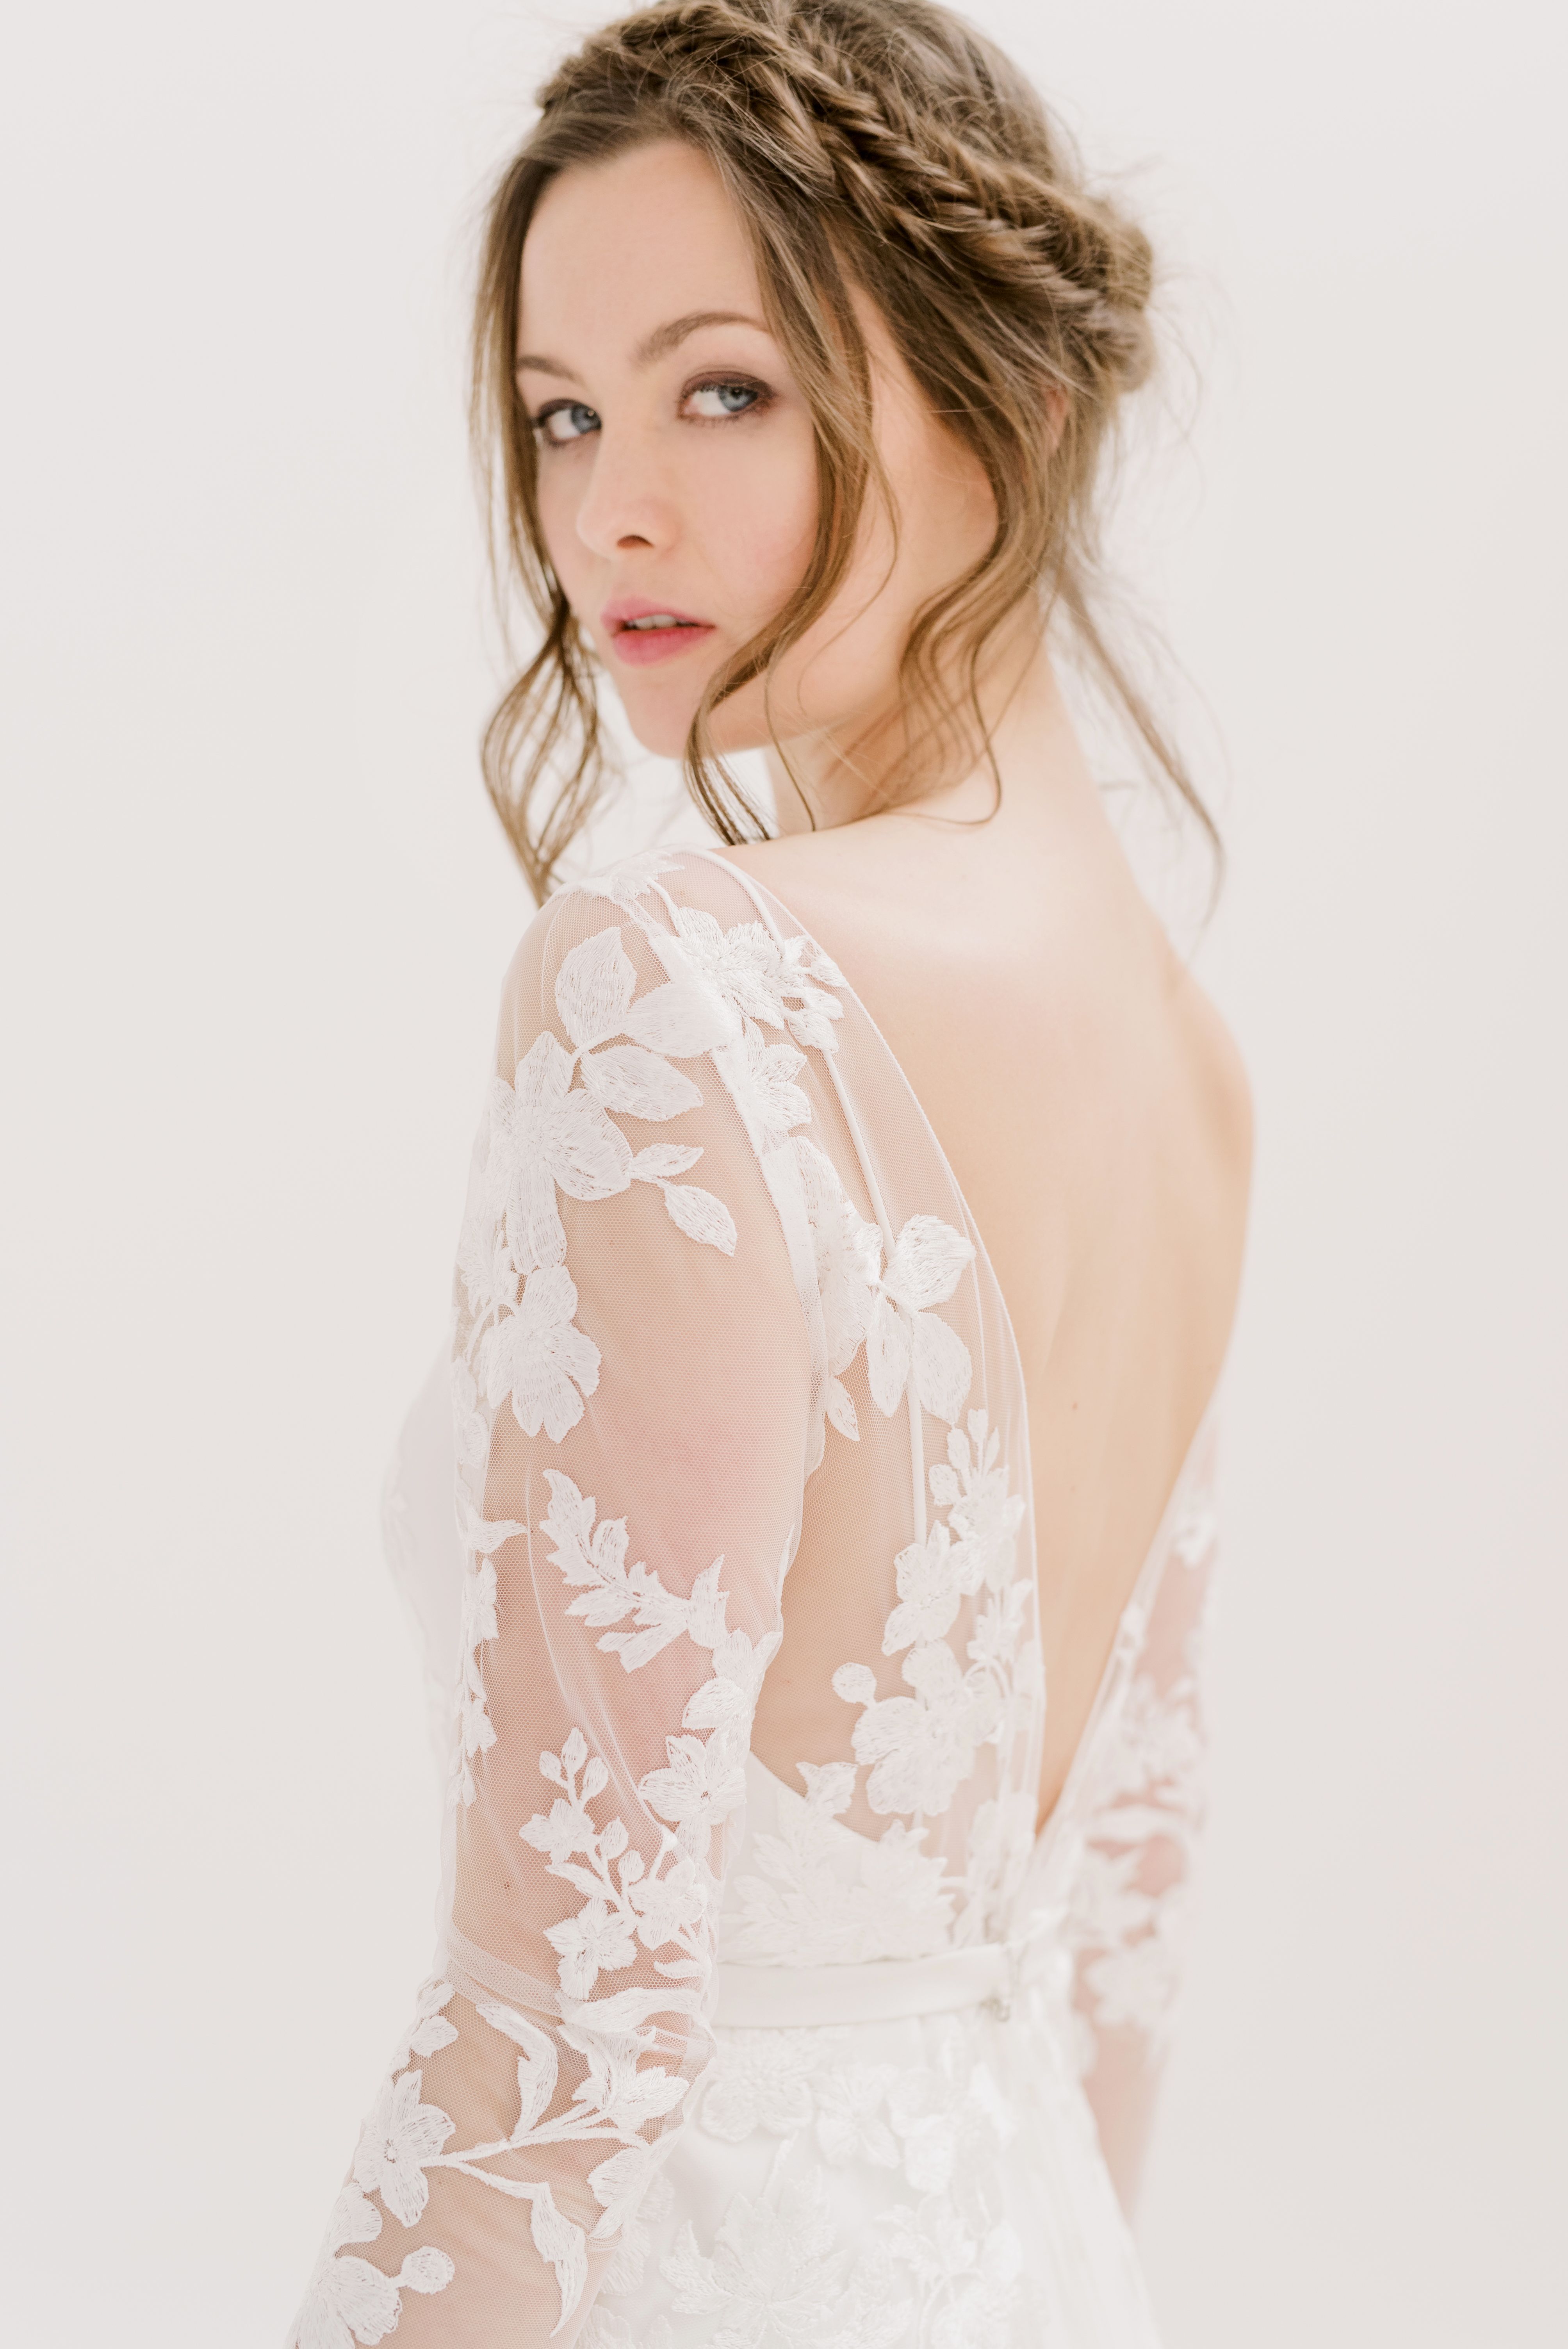 Shine-Female-model-Charlotte-Bridal-model-London-01.jpg#asset:47868